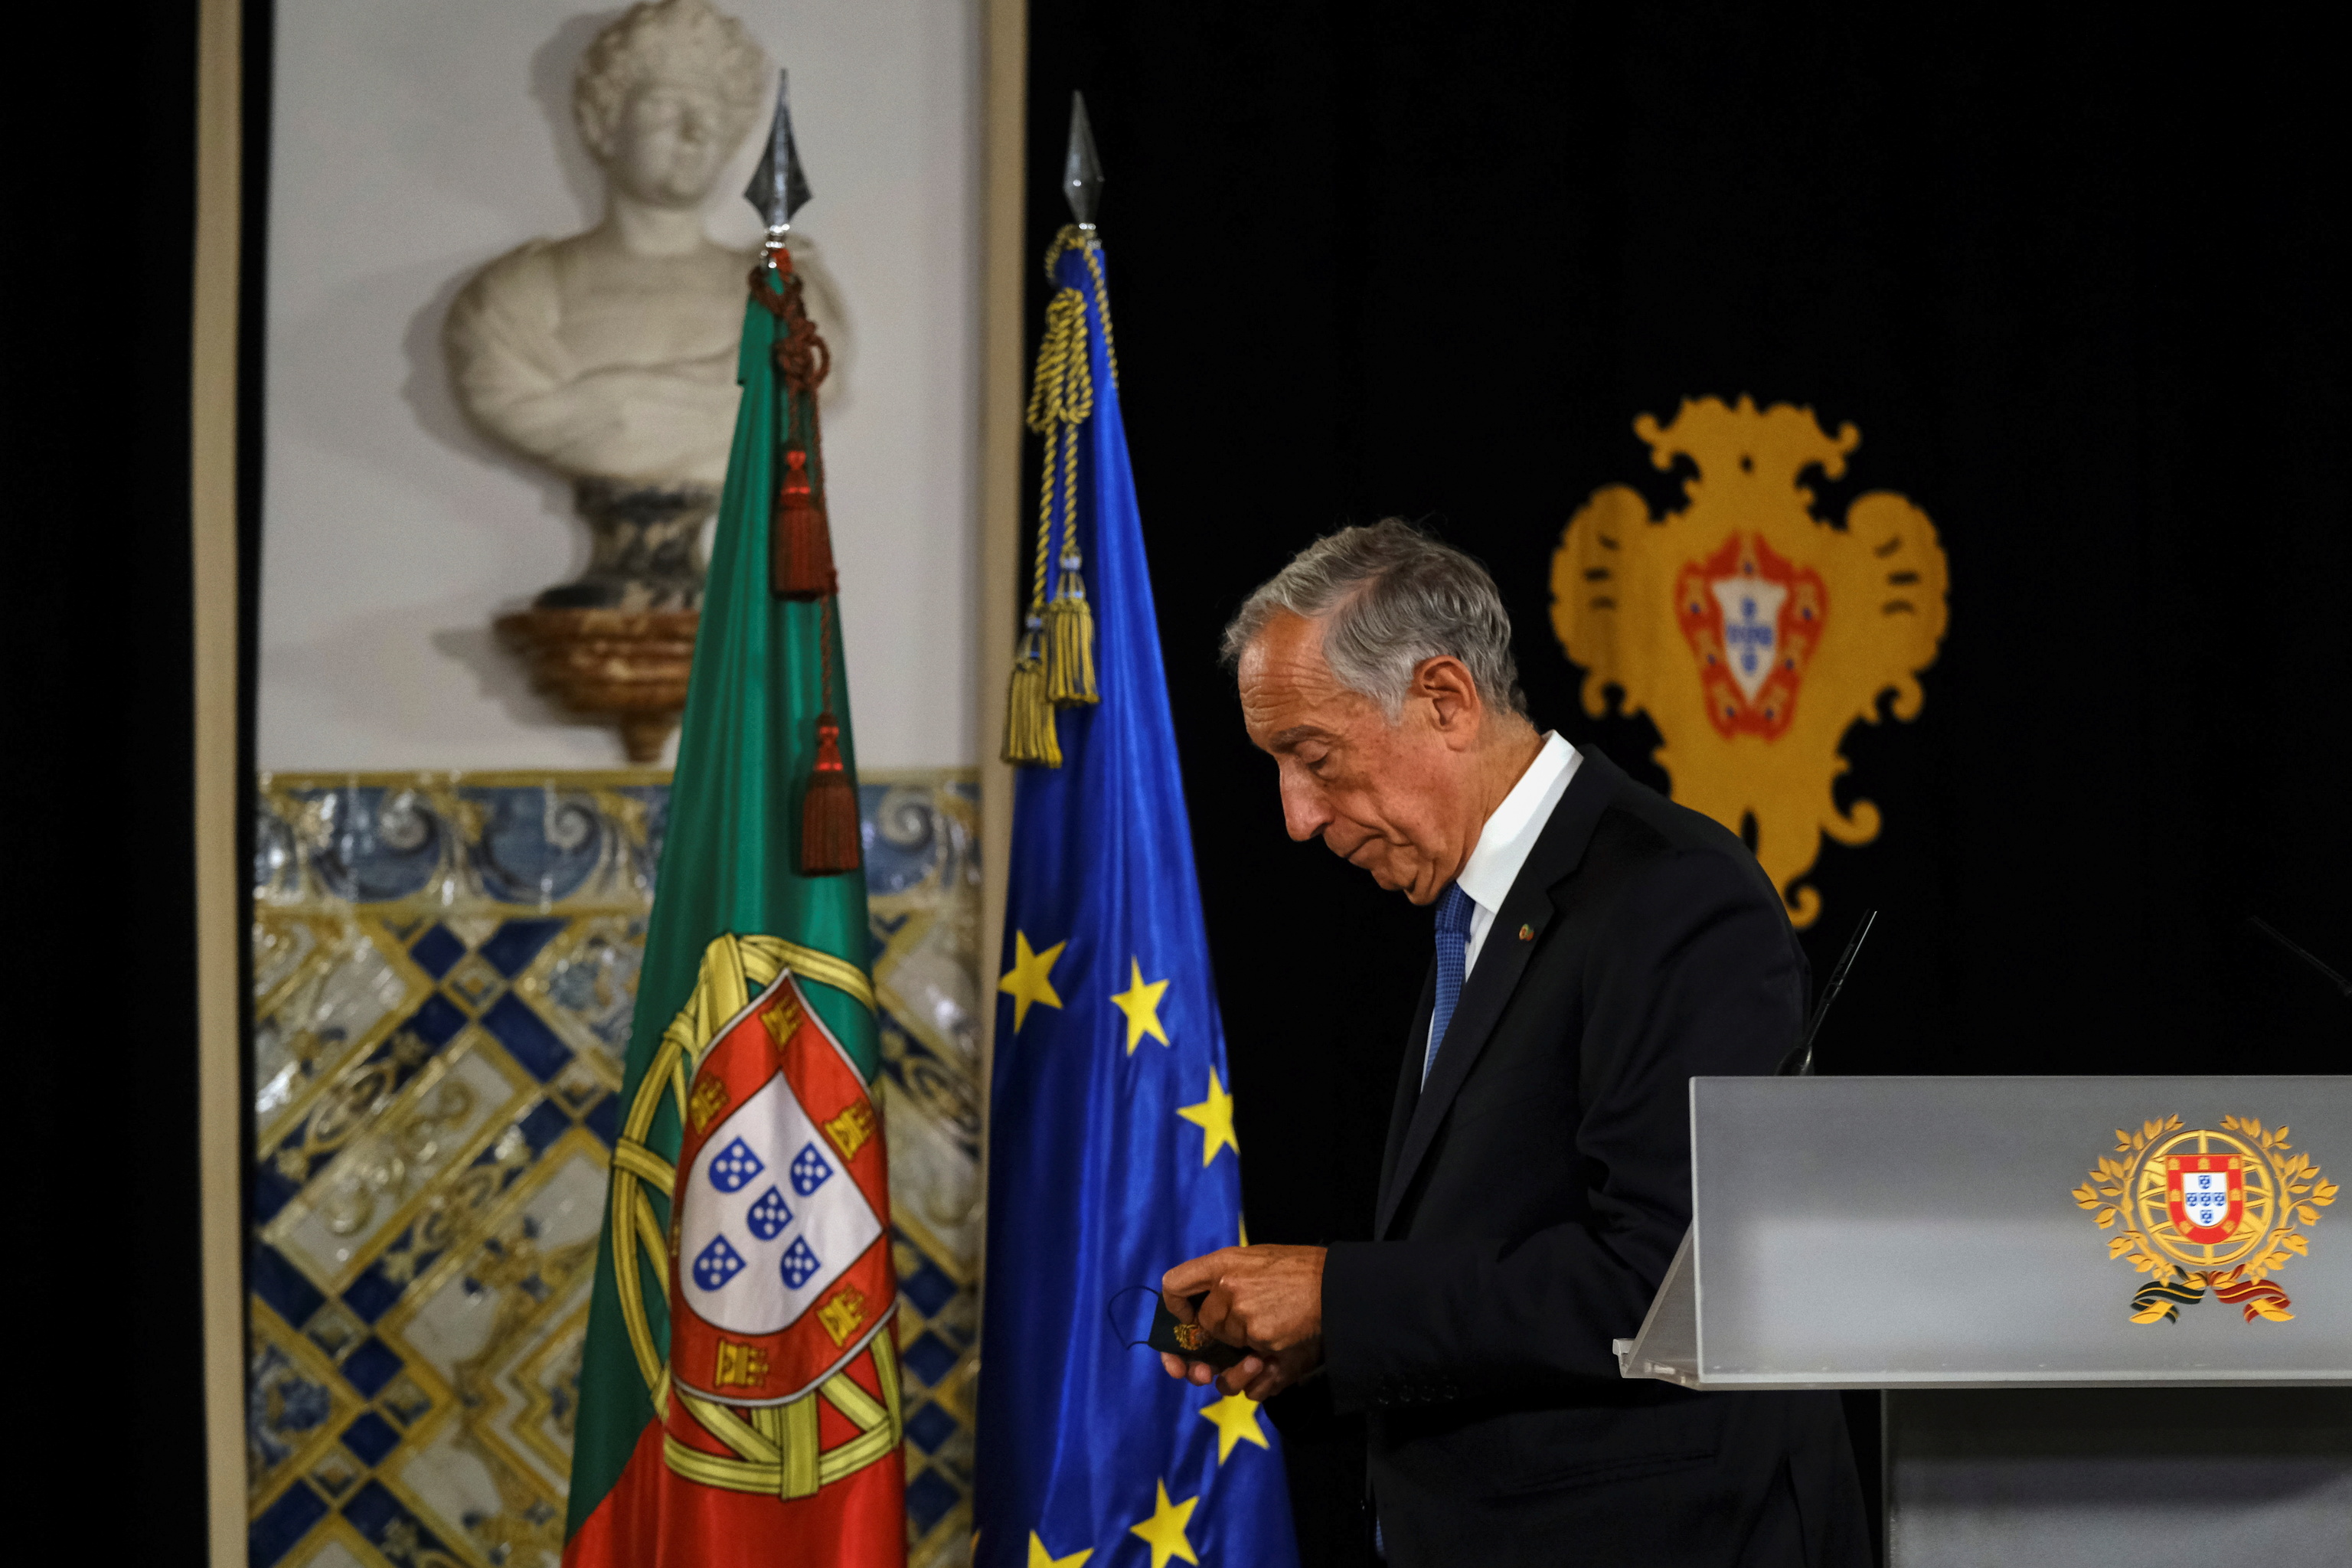 El presidente de Portugal, Marcelo Rebelo de Sousa, sale despus de anunciar su decisin de disolver el parlamento provocando elecciones generales anticipadas, en el Palacio de Belem, en Lisboa, Portugal.